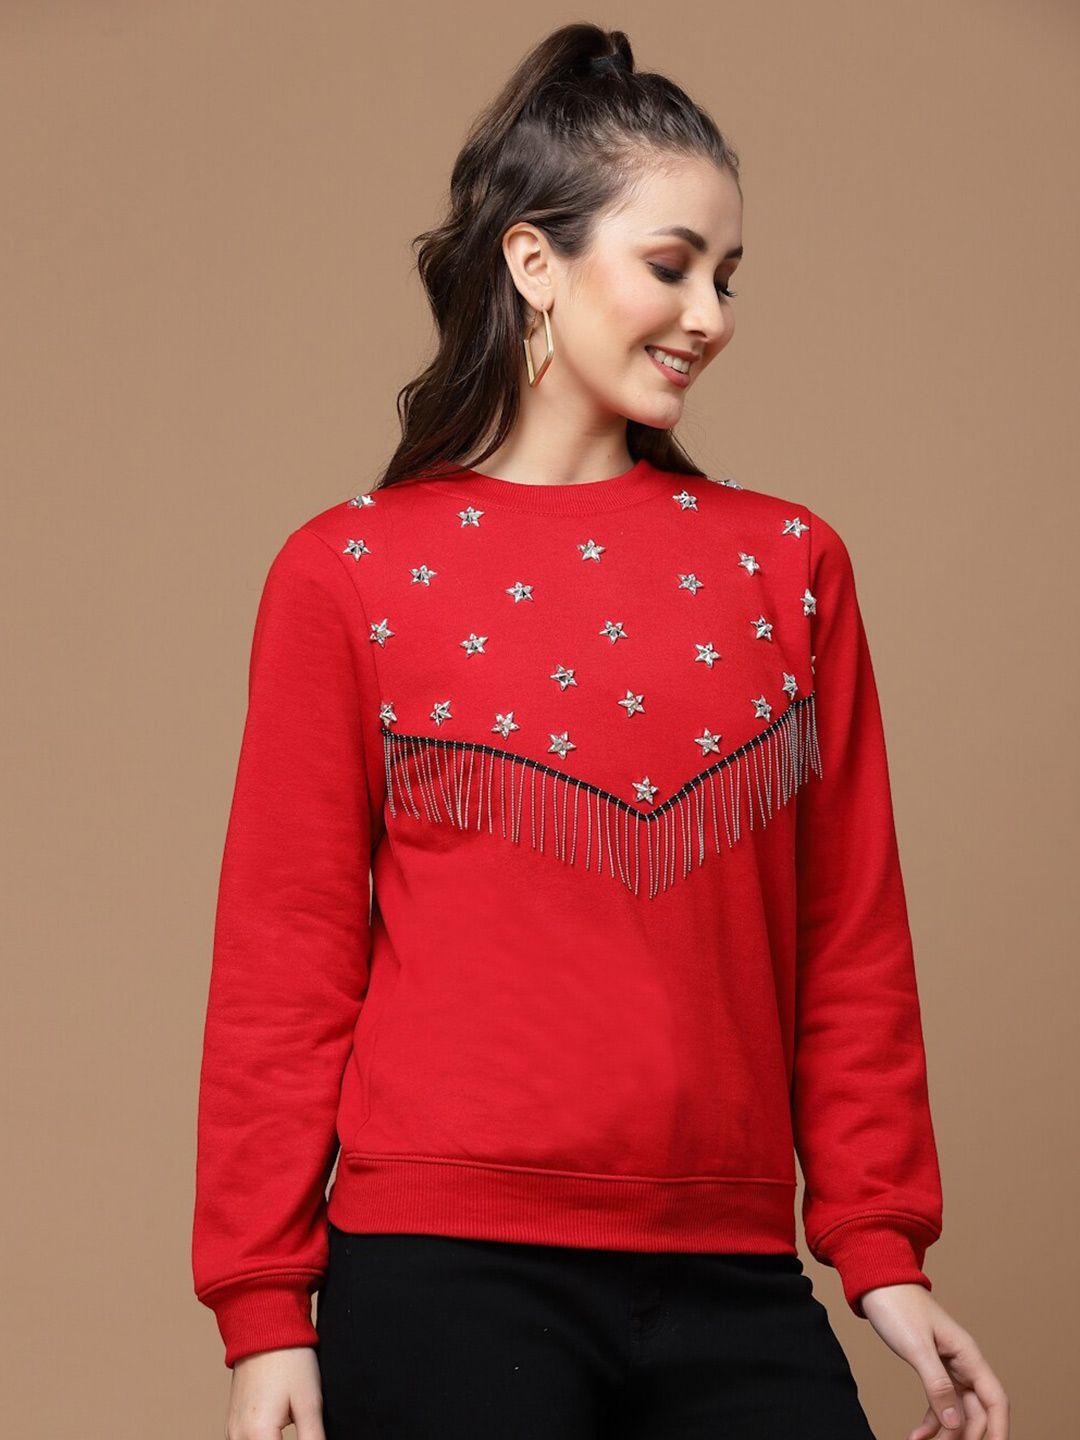 kassually women embellished sweatshirt